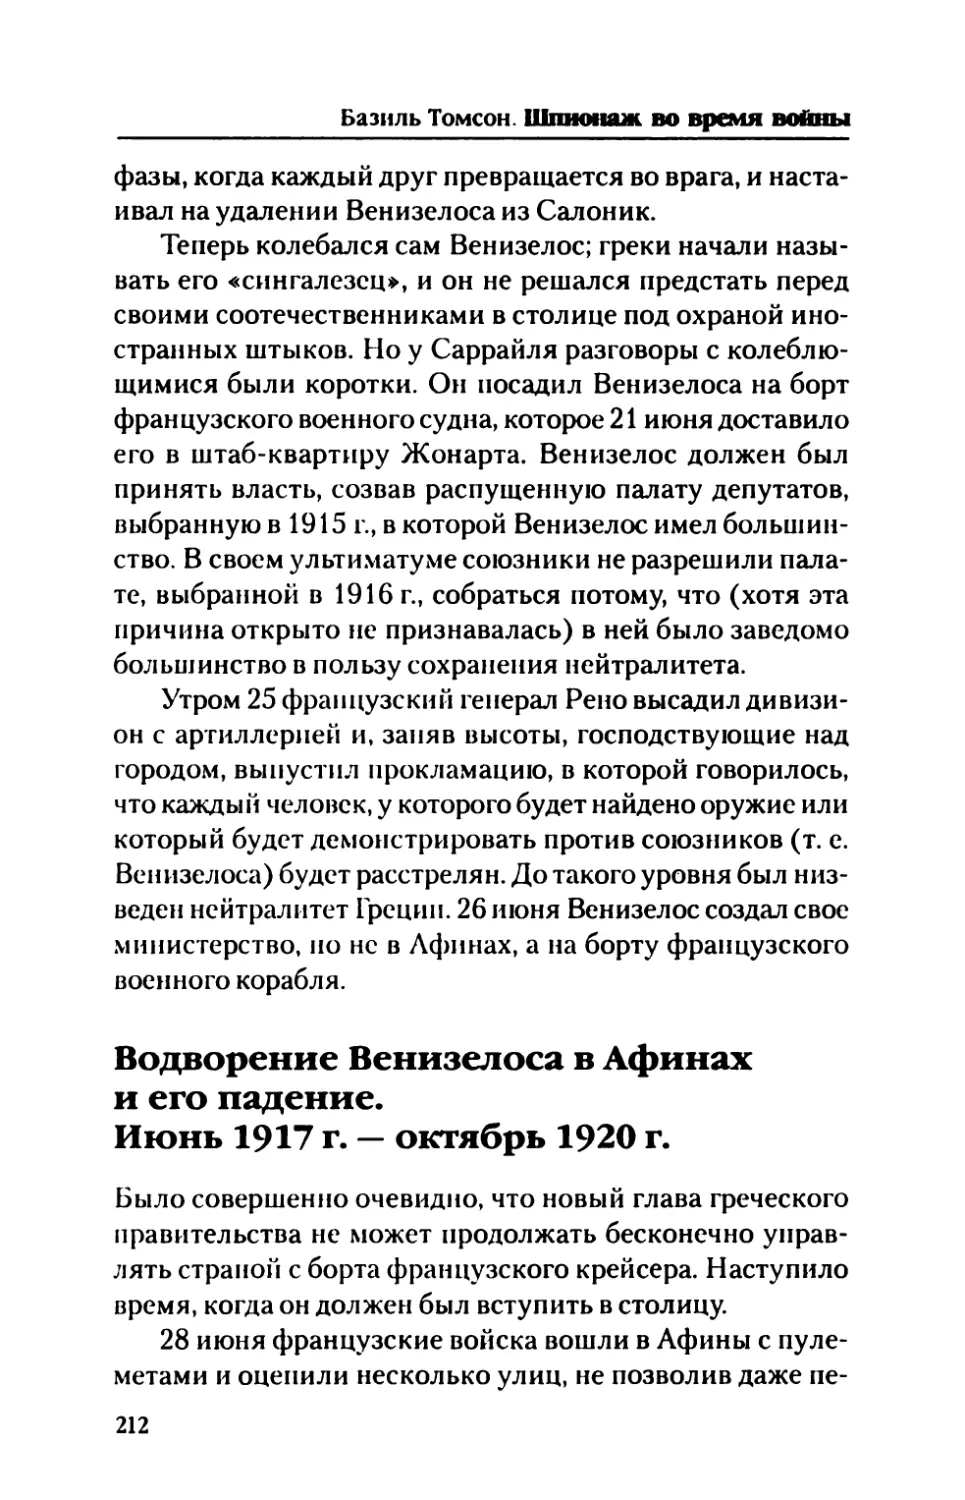 Водворение  Веннзелоса  в  Афинах  и  его  падение. Июнь  1917  г.  —  октябрь  1920  г